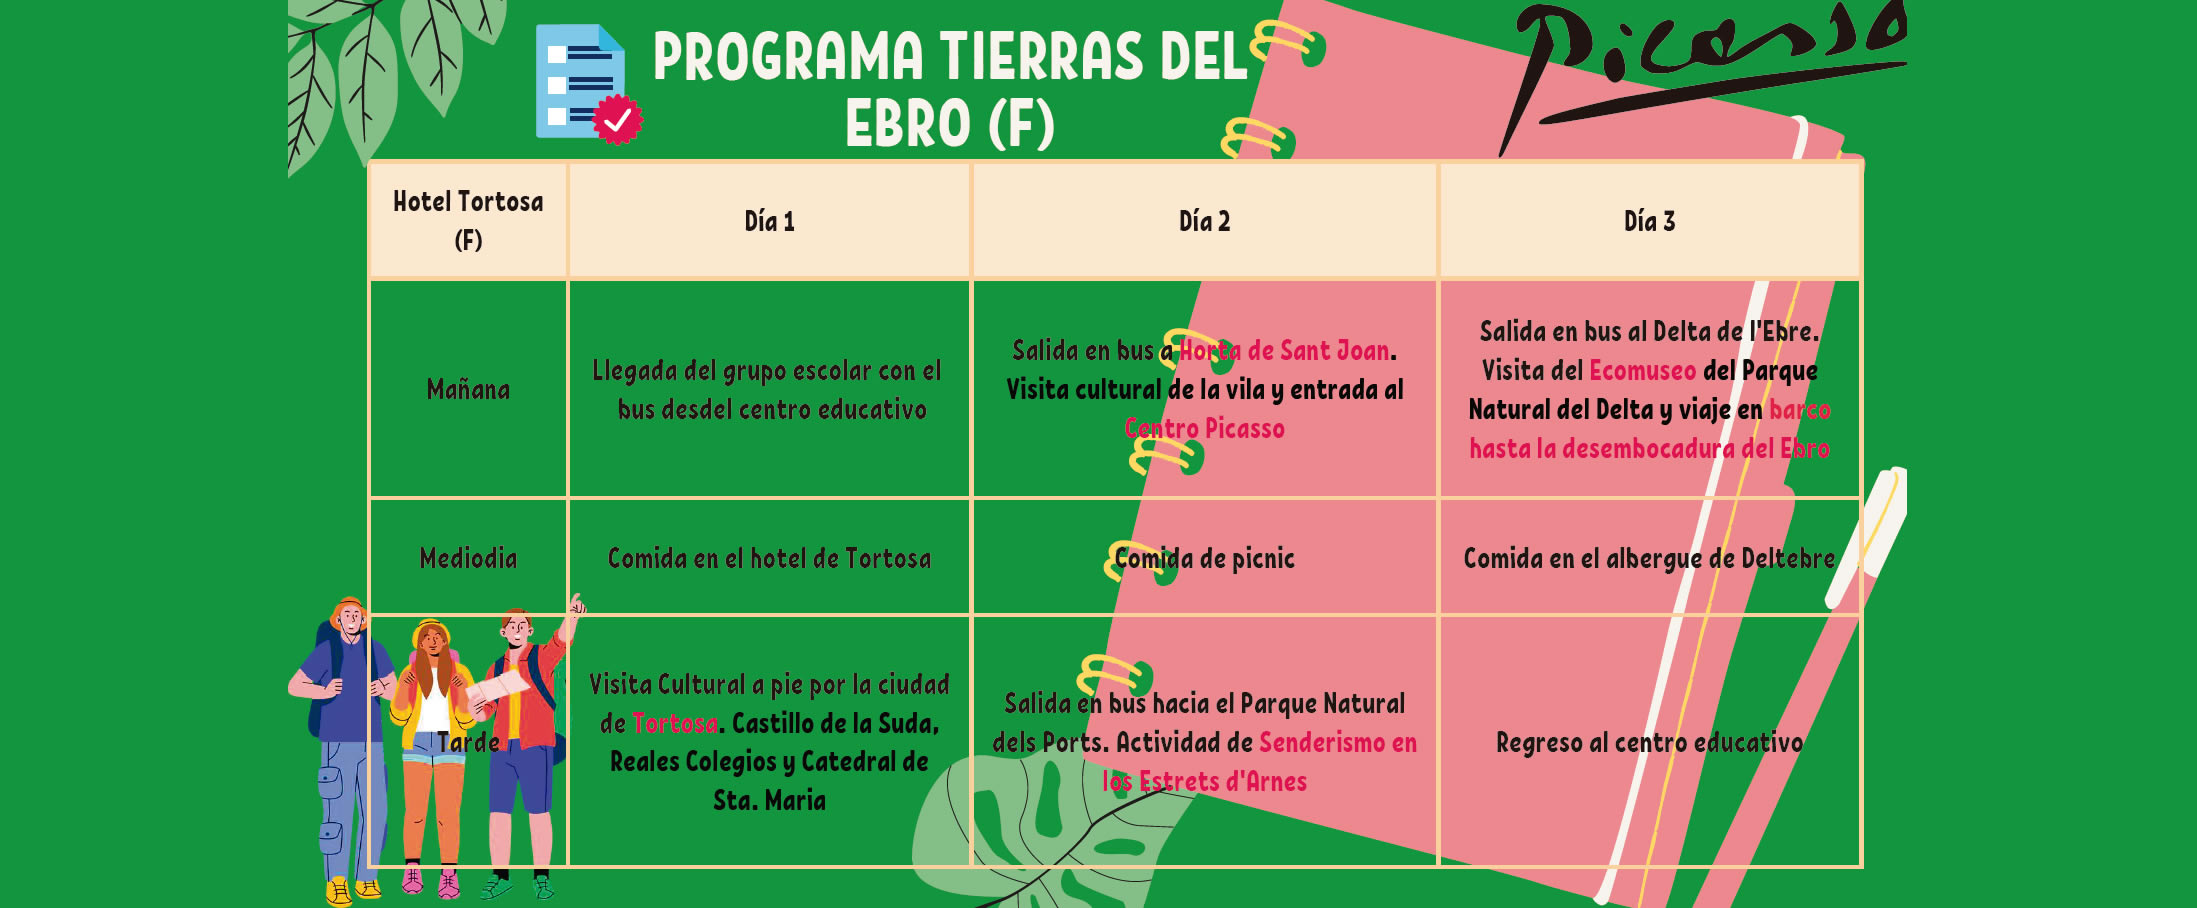 Tierras del Ebro school program (F)